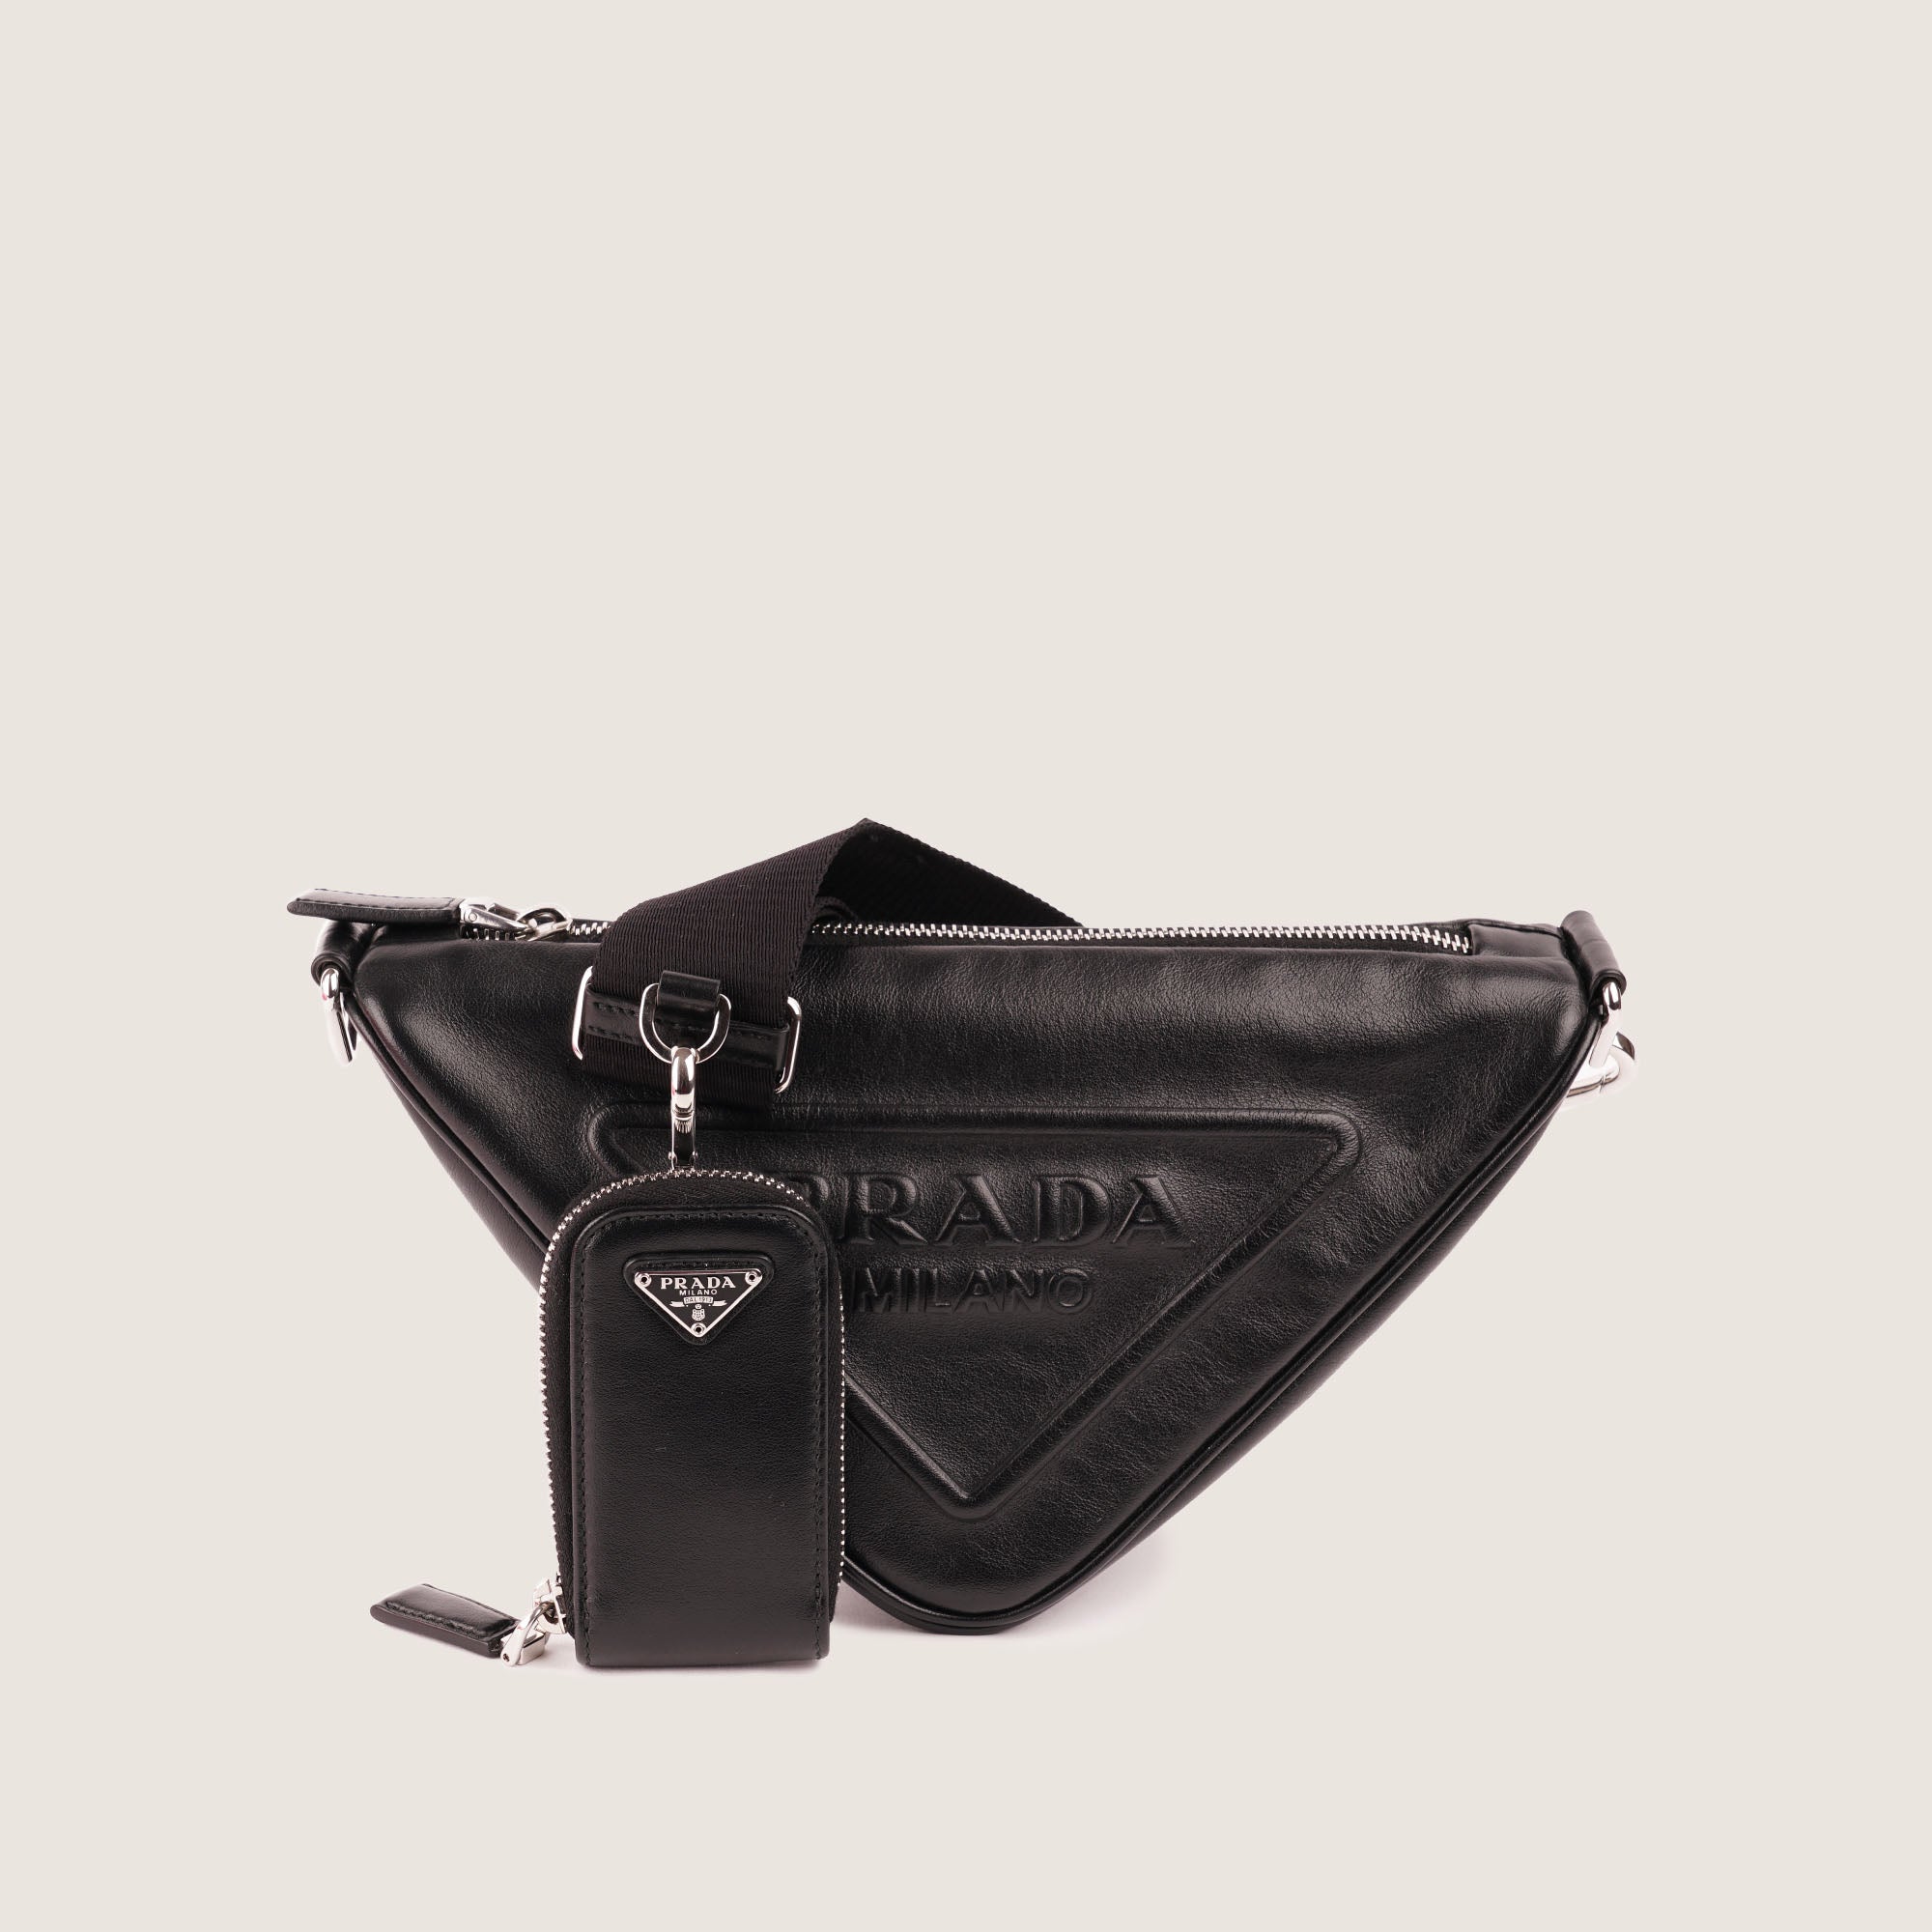 Triangle Shoulder Bag - PRADA - Affordable Luxury image